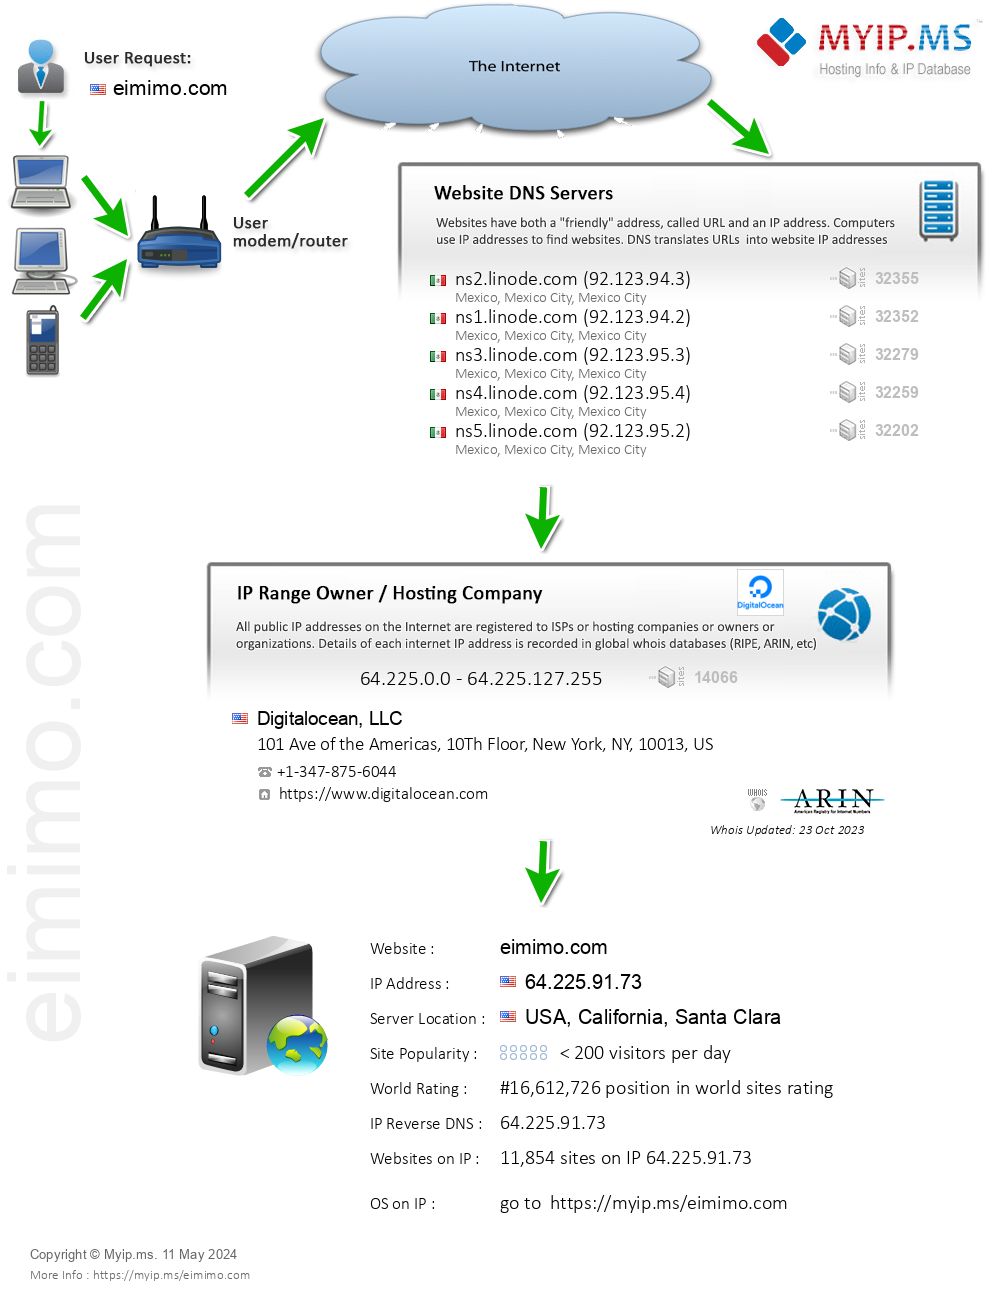 Eimimo.com - Website Hosting Visual IP Diagram